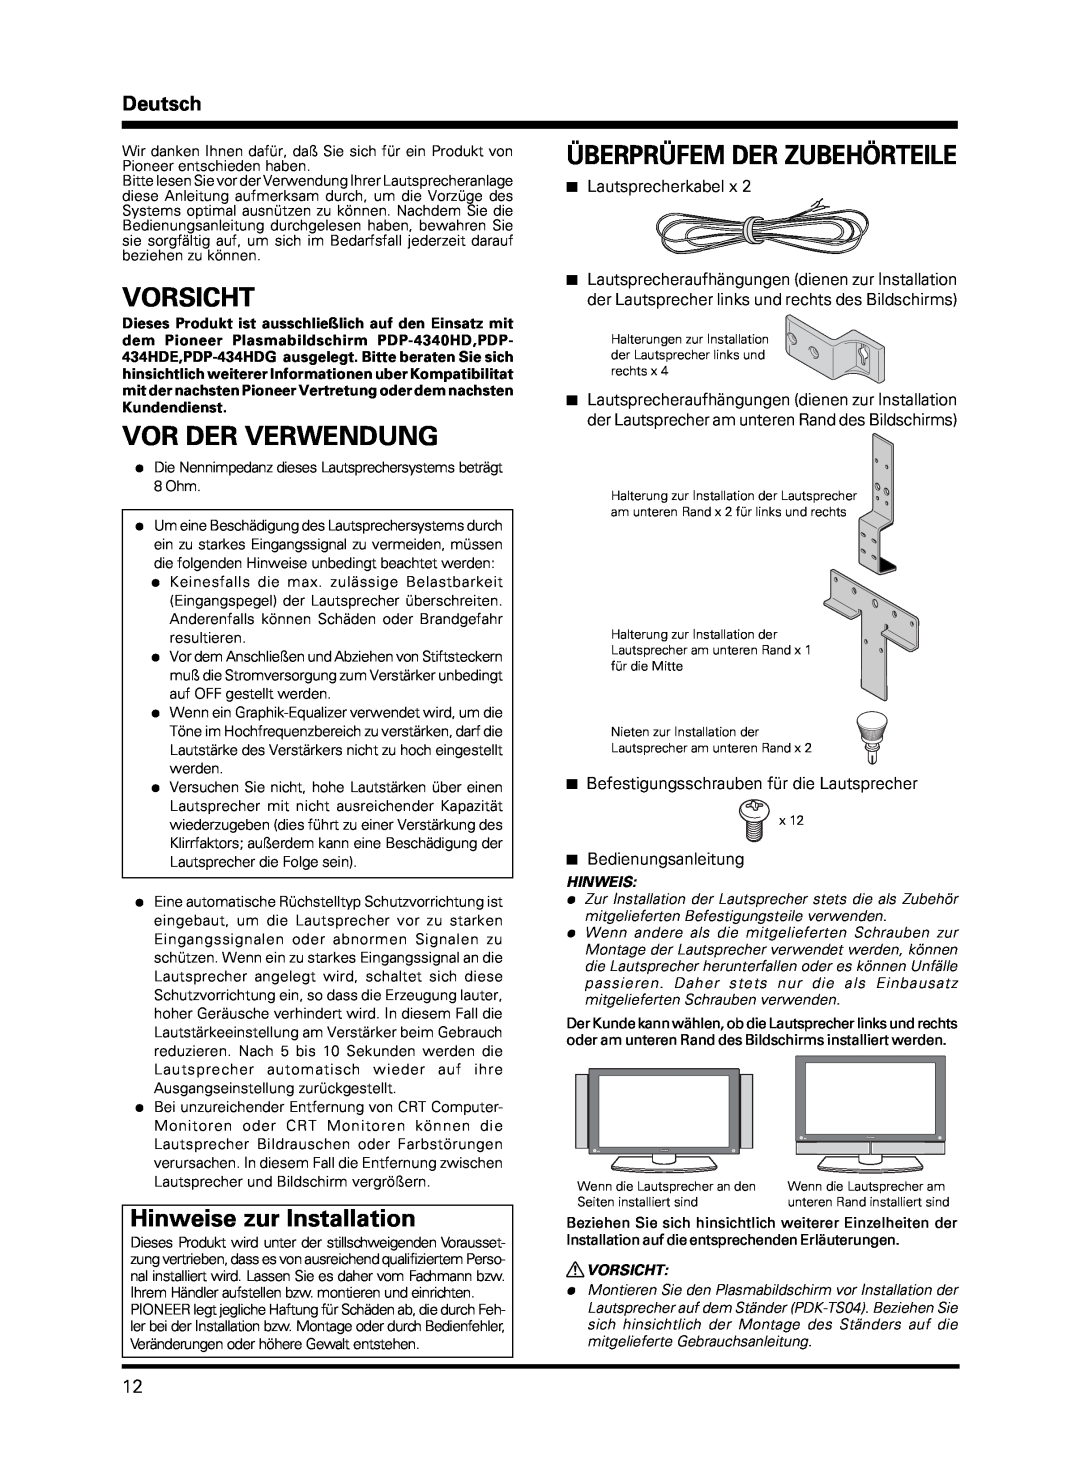 Pioneer PDP-S13-LR manual Vorsicht, Vor Der Verwendung, Überprüfem Der Zubehörteile, Hinweise zur Installation, Deutsch 